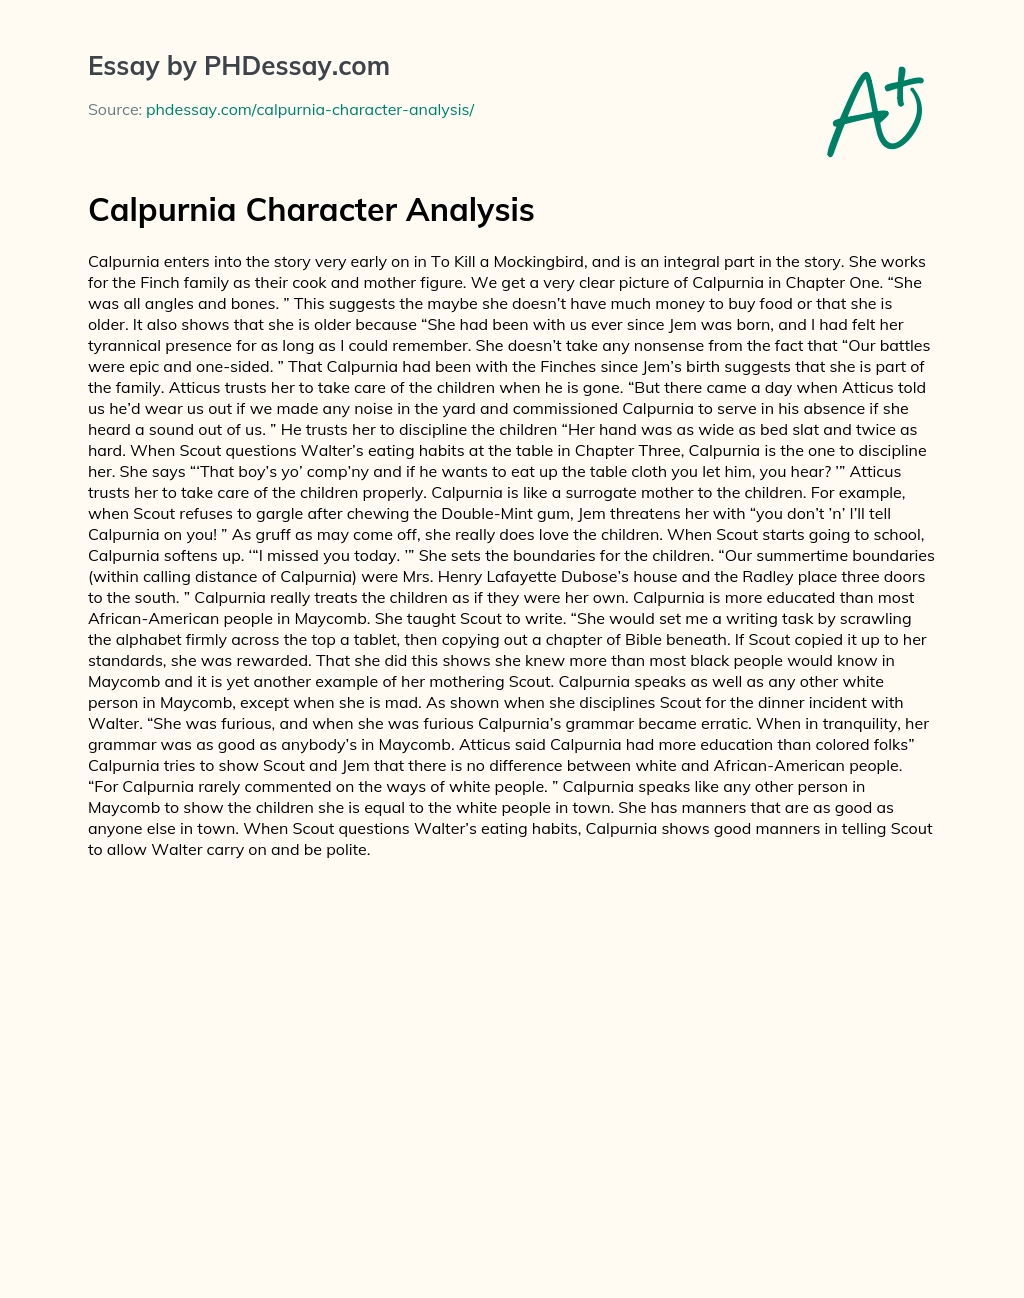 Calpurnia Character Analysis essay